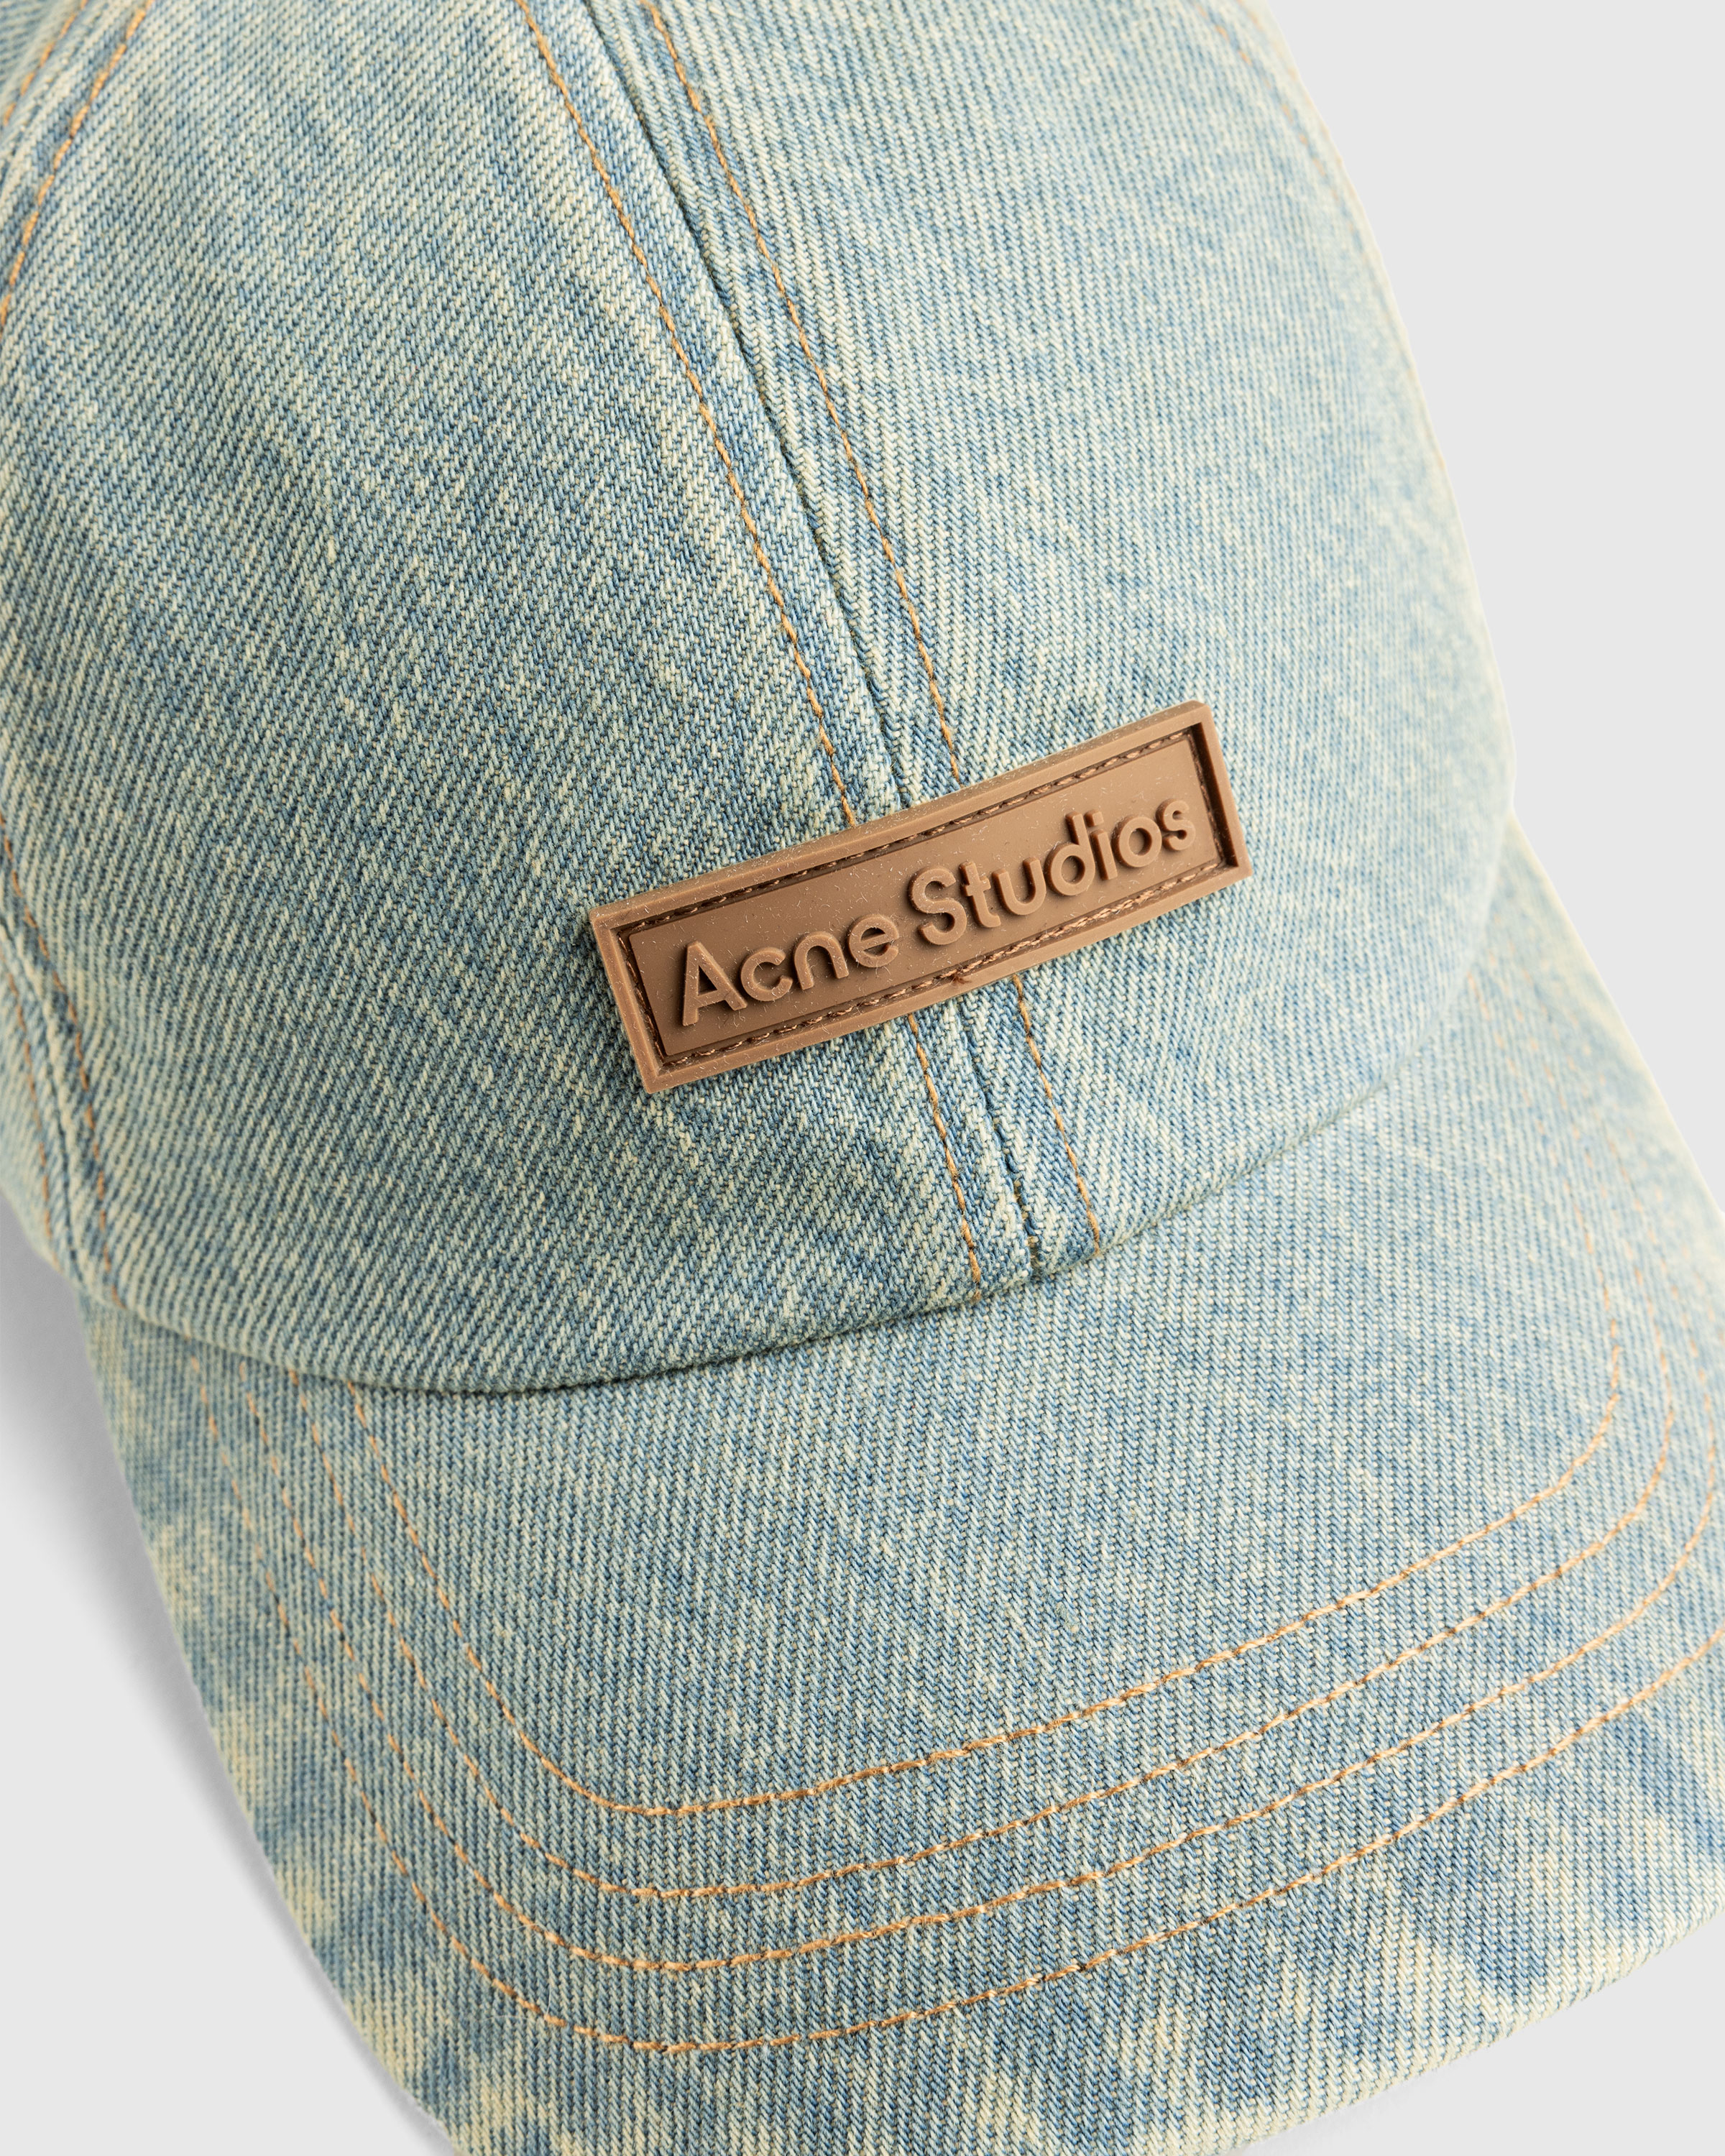 Acne Studios – Denim Cap Blue Beige - Hats - Blue - Image 5